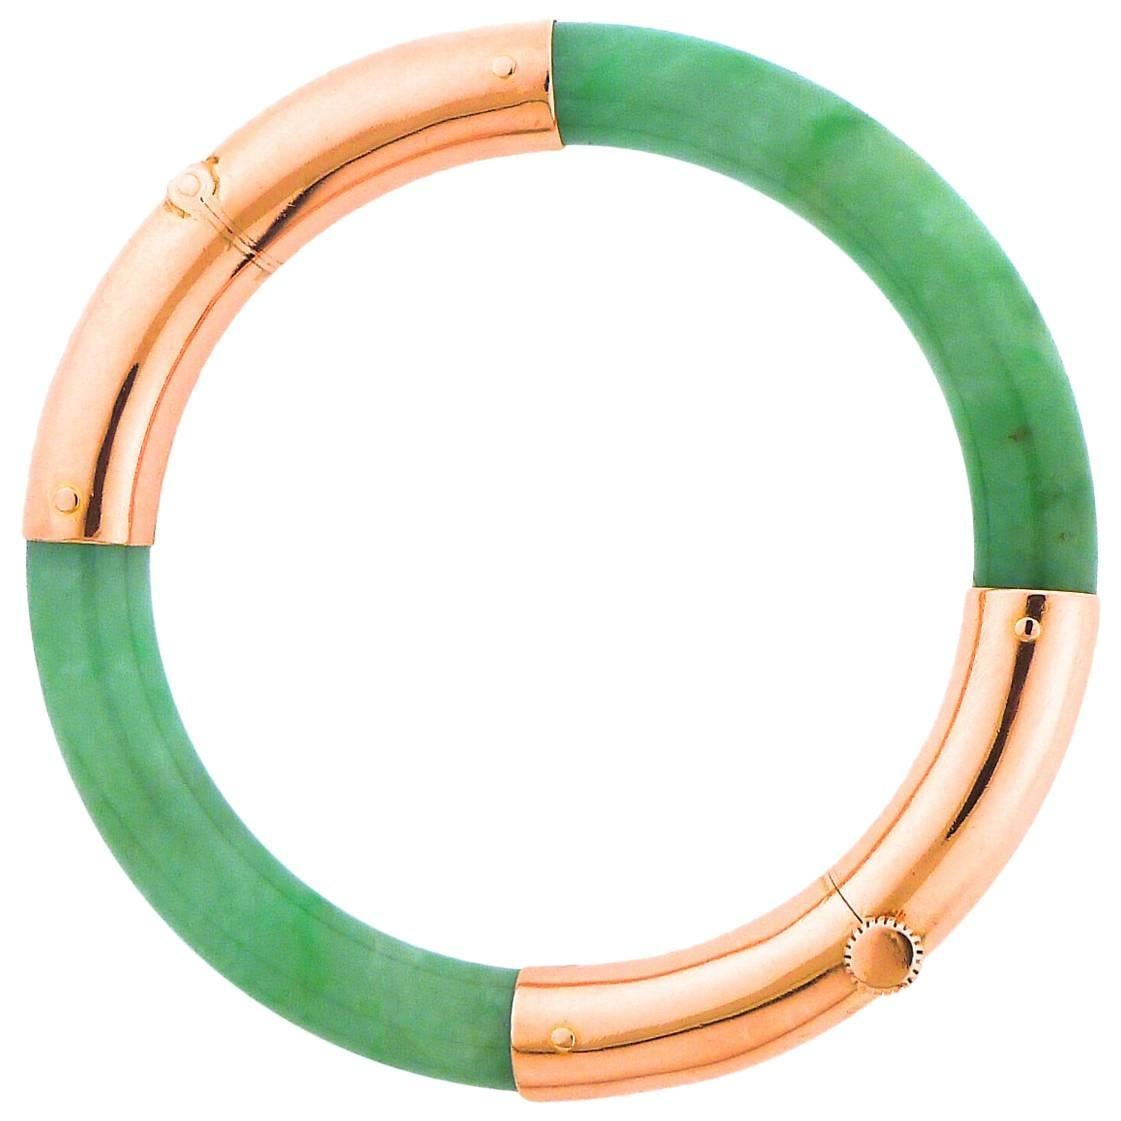  Green Jadeite Rose Gold Bangle Bracelet